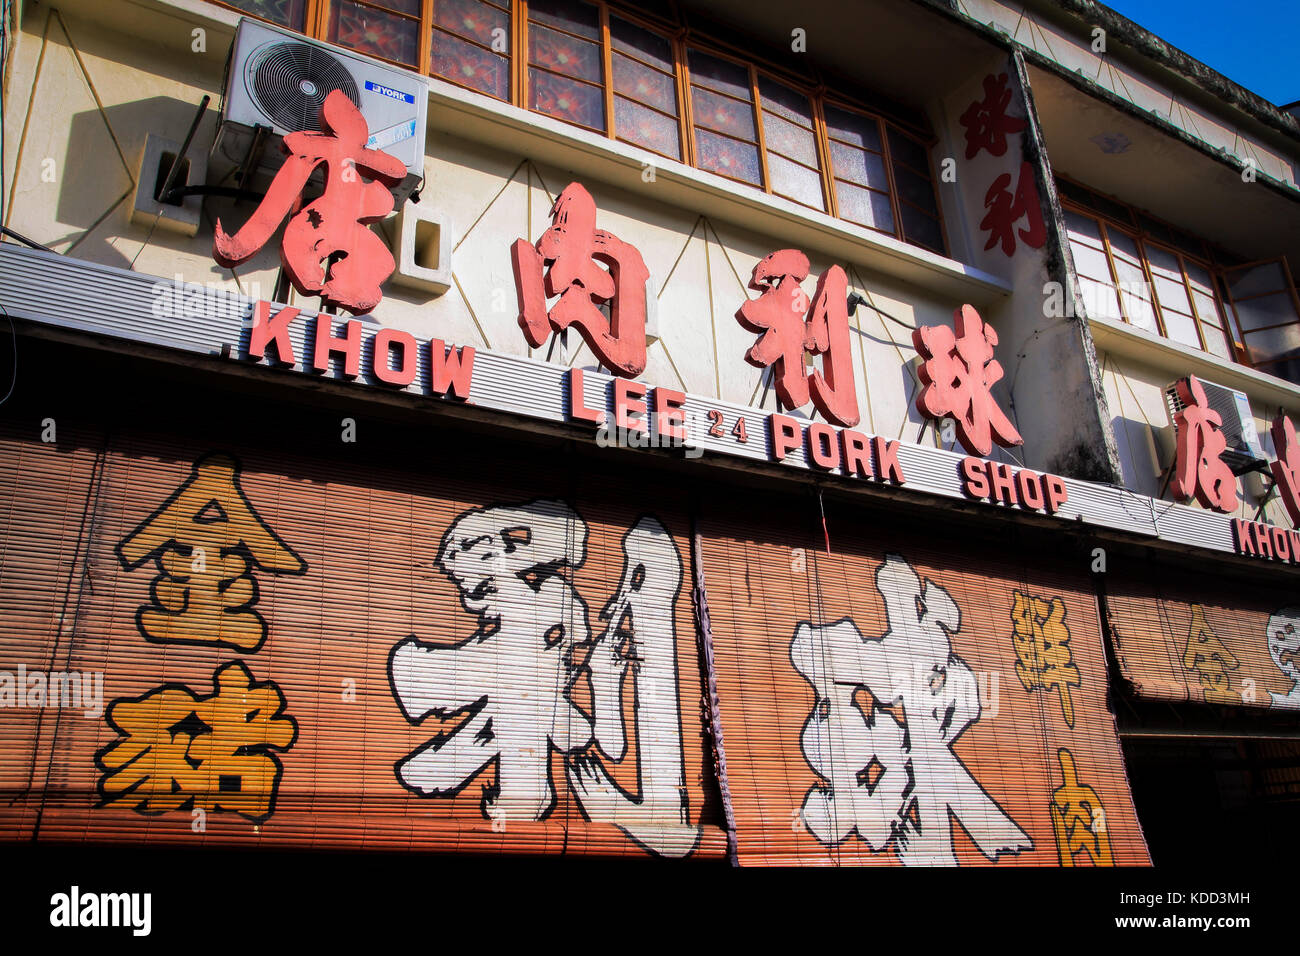 Boutique de porc chinois sur l'île de Penang en Malaisie advertising sa spécialité dans une grande manière. Porc frais est fortement les régimes alimentaires malais en chinois Banque D'Images